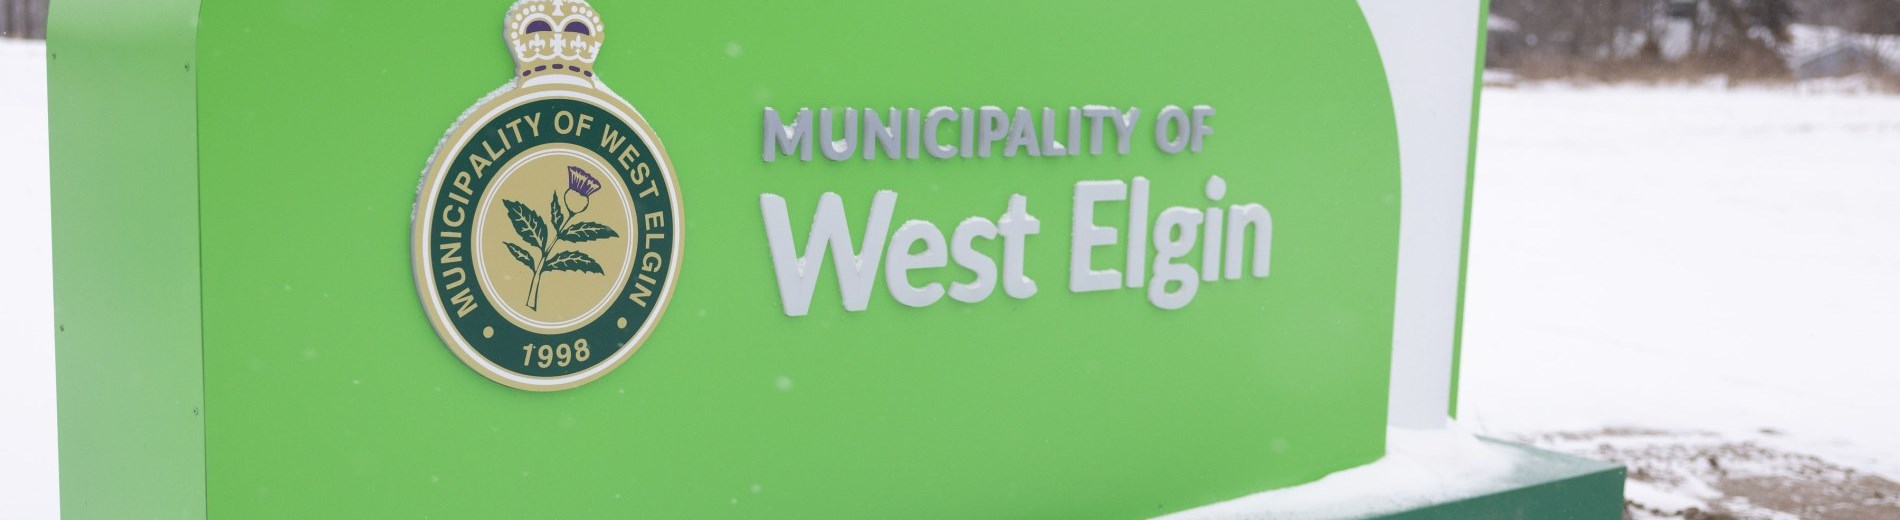 West Elgin Sign